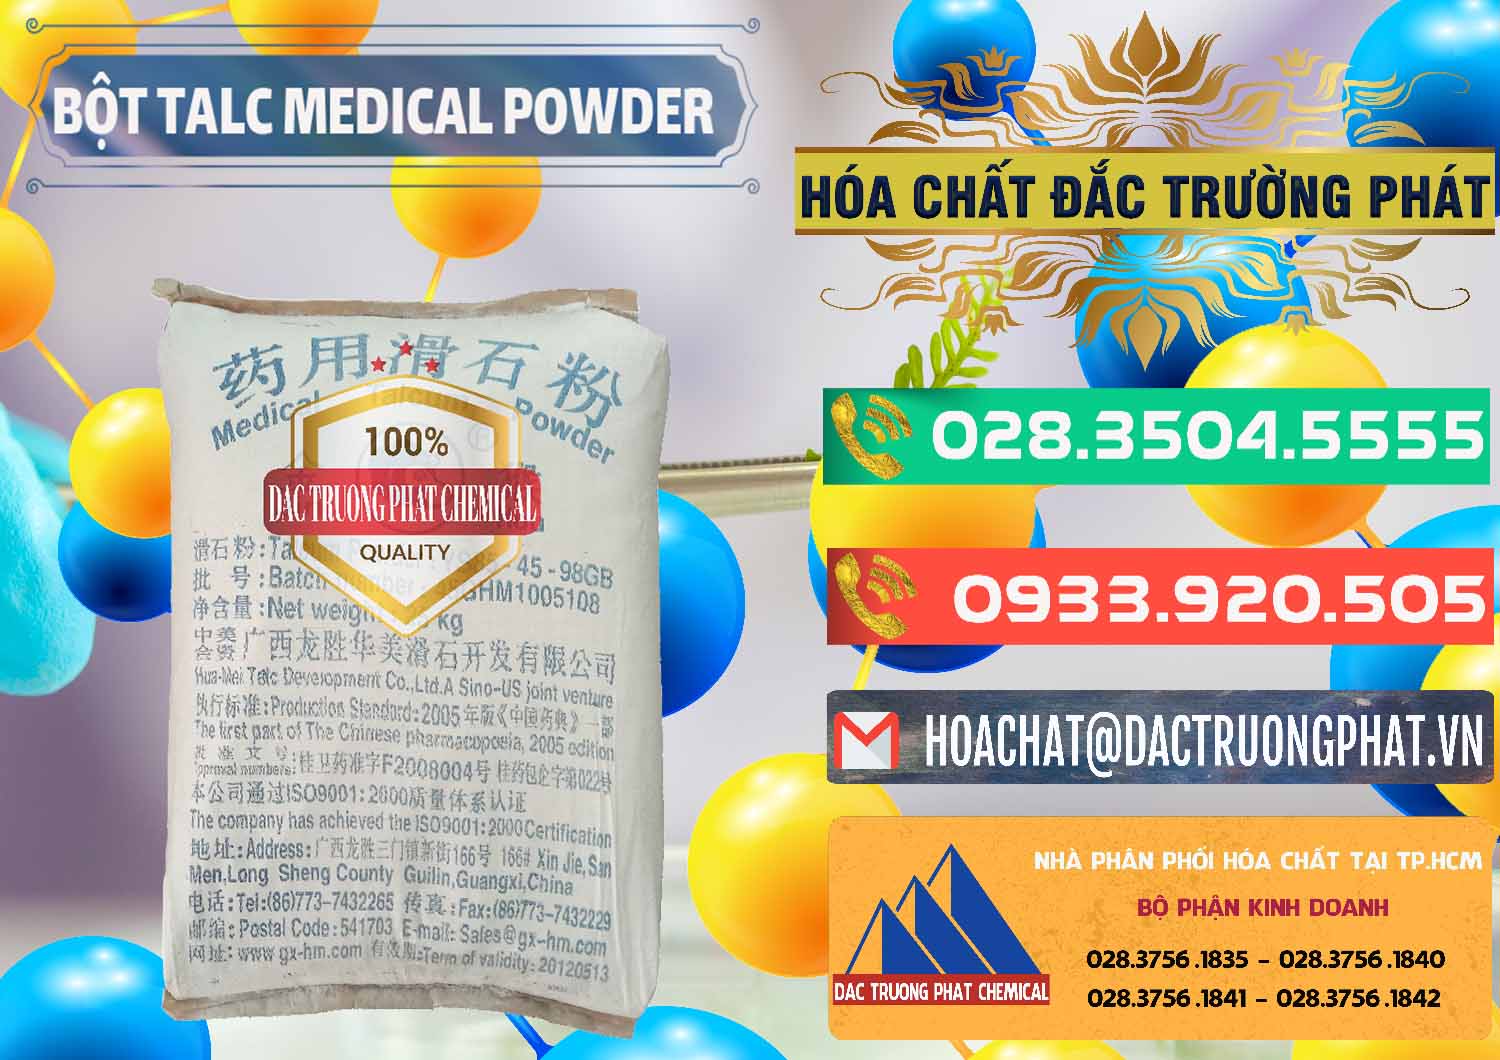 Bán & cung cấp Bột Talc Medical Powder Trung Quốc China - 0036 - Nơi chuyên kinh doanh & cung cấp hóa chất tại TP.HCM - congtyhoachat.com.vn